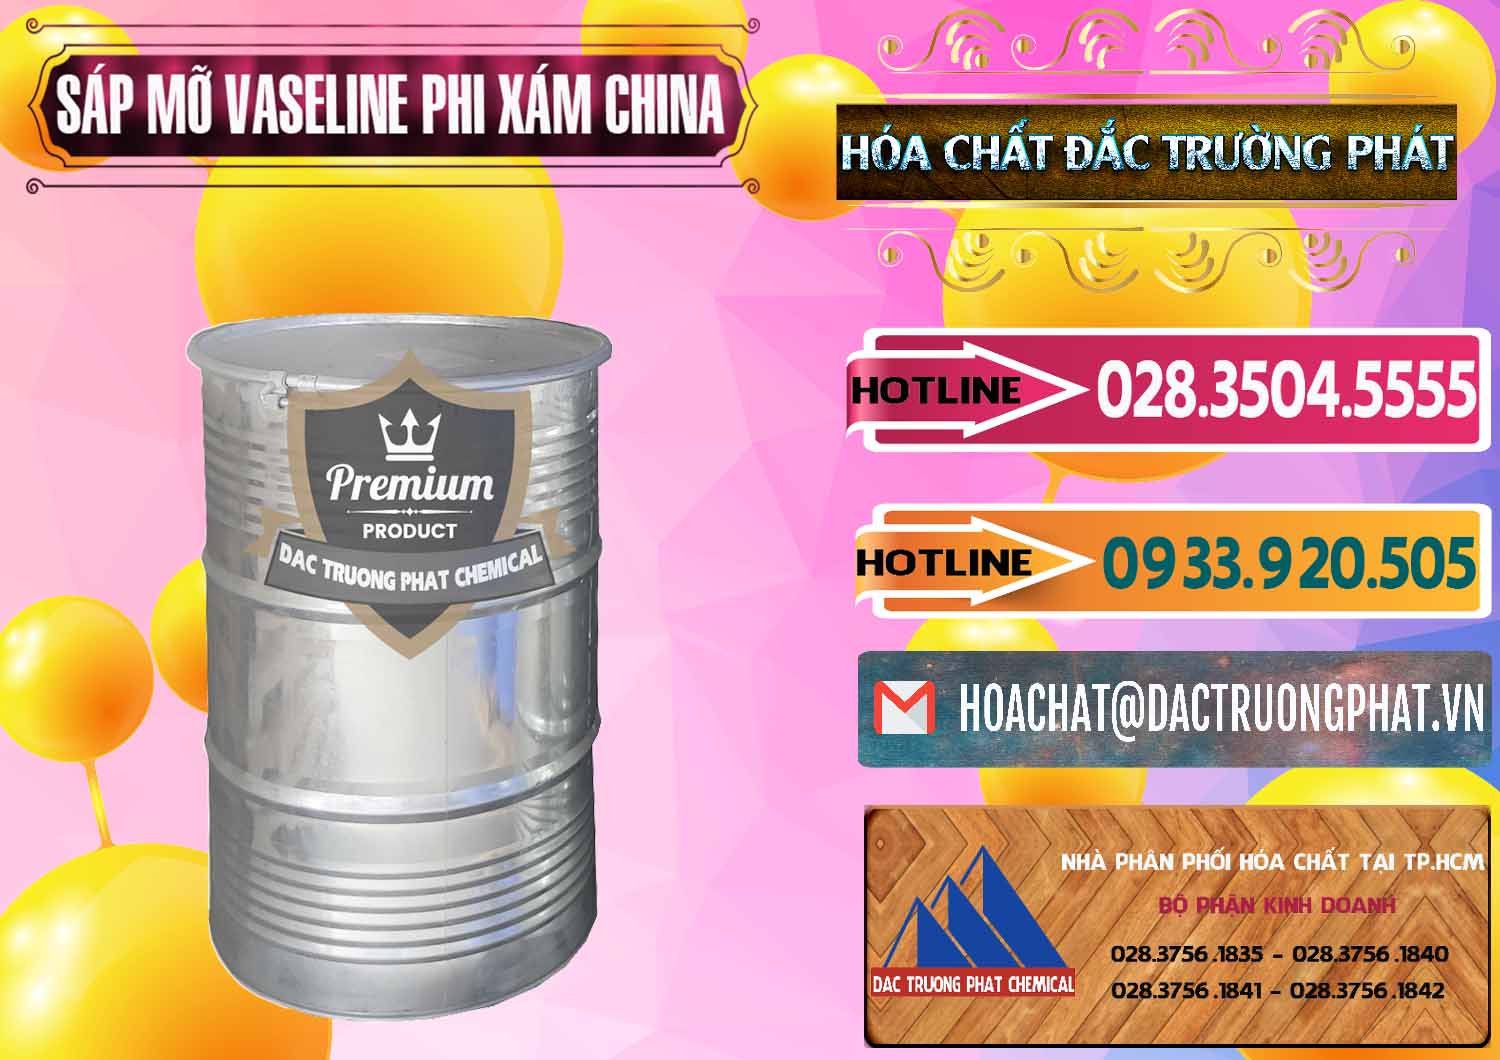 Bán _ phân phối Sáp Mỡ Vaseline Phi Xám Trung Quốc China - 0291 - Công ty chuyên kinh doanh _ phân phối hóa chất tại TP.HCM - dactruongphat.vn